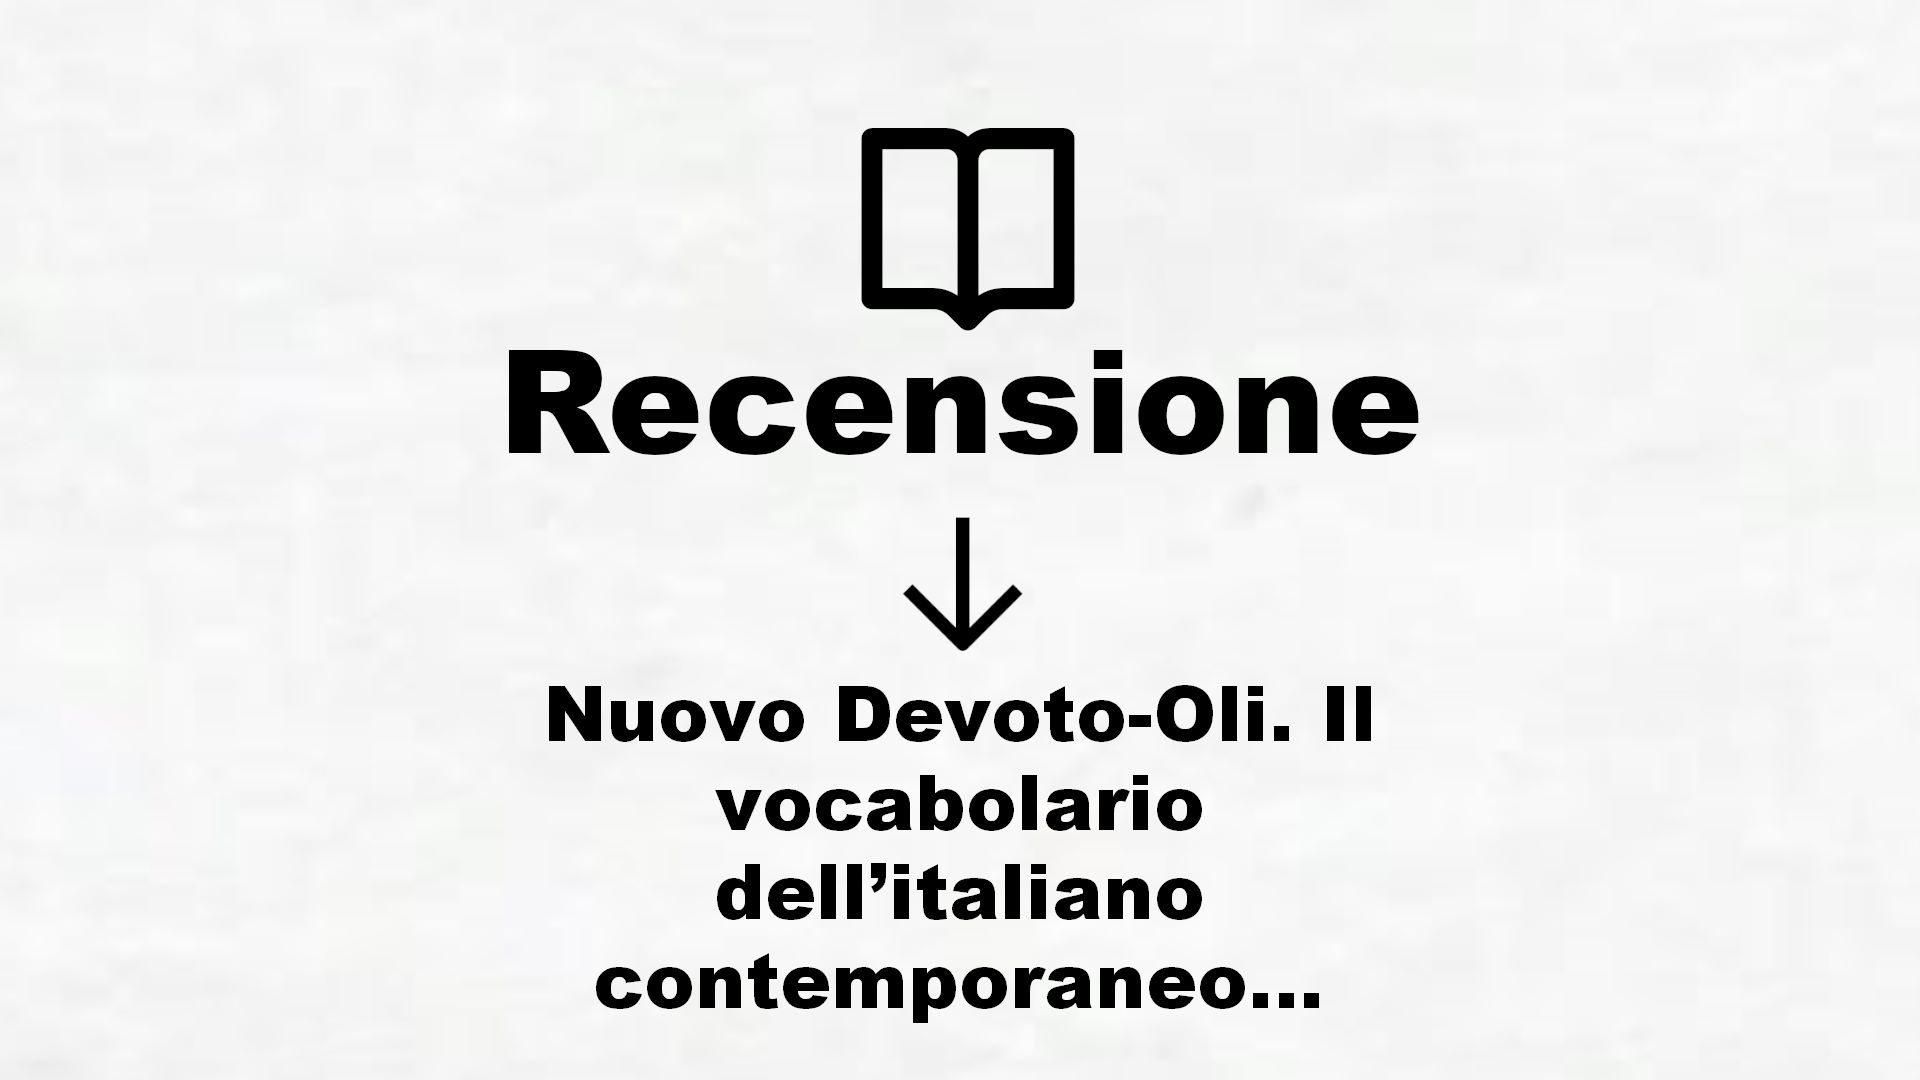 Nuovo Devoto-Oli. Il vocabolario dell’italiano contemporaneo 2021. Con App scaricabile su smartphone e tablet – Recensione Libro